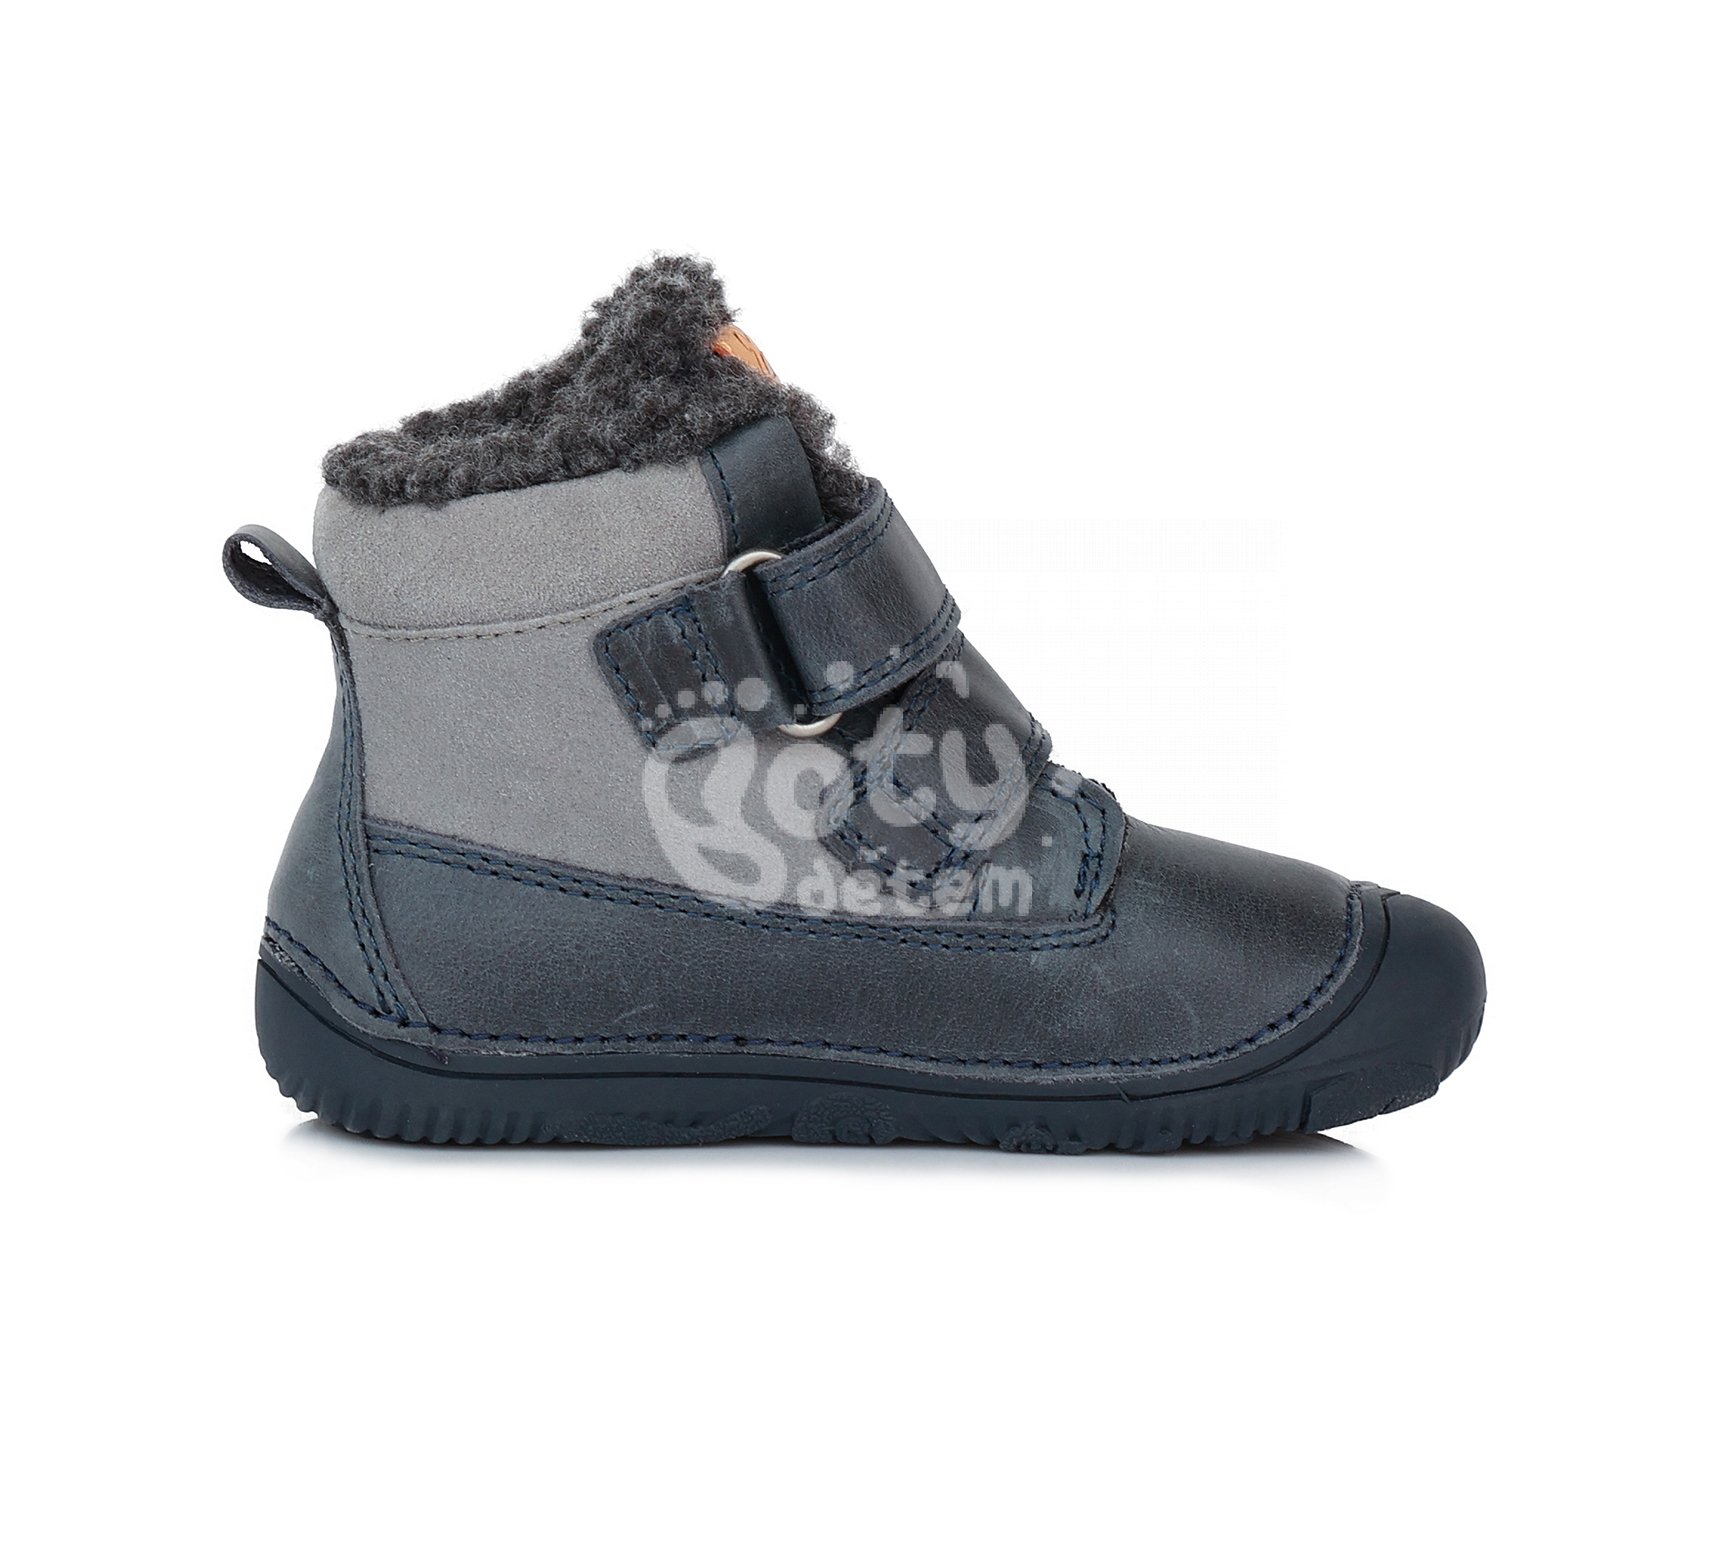 Zimní kožené barefoot boty D.D.step W073-29 modrá